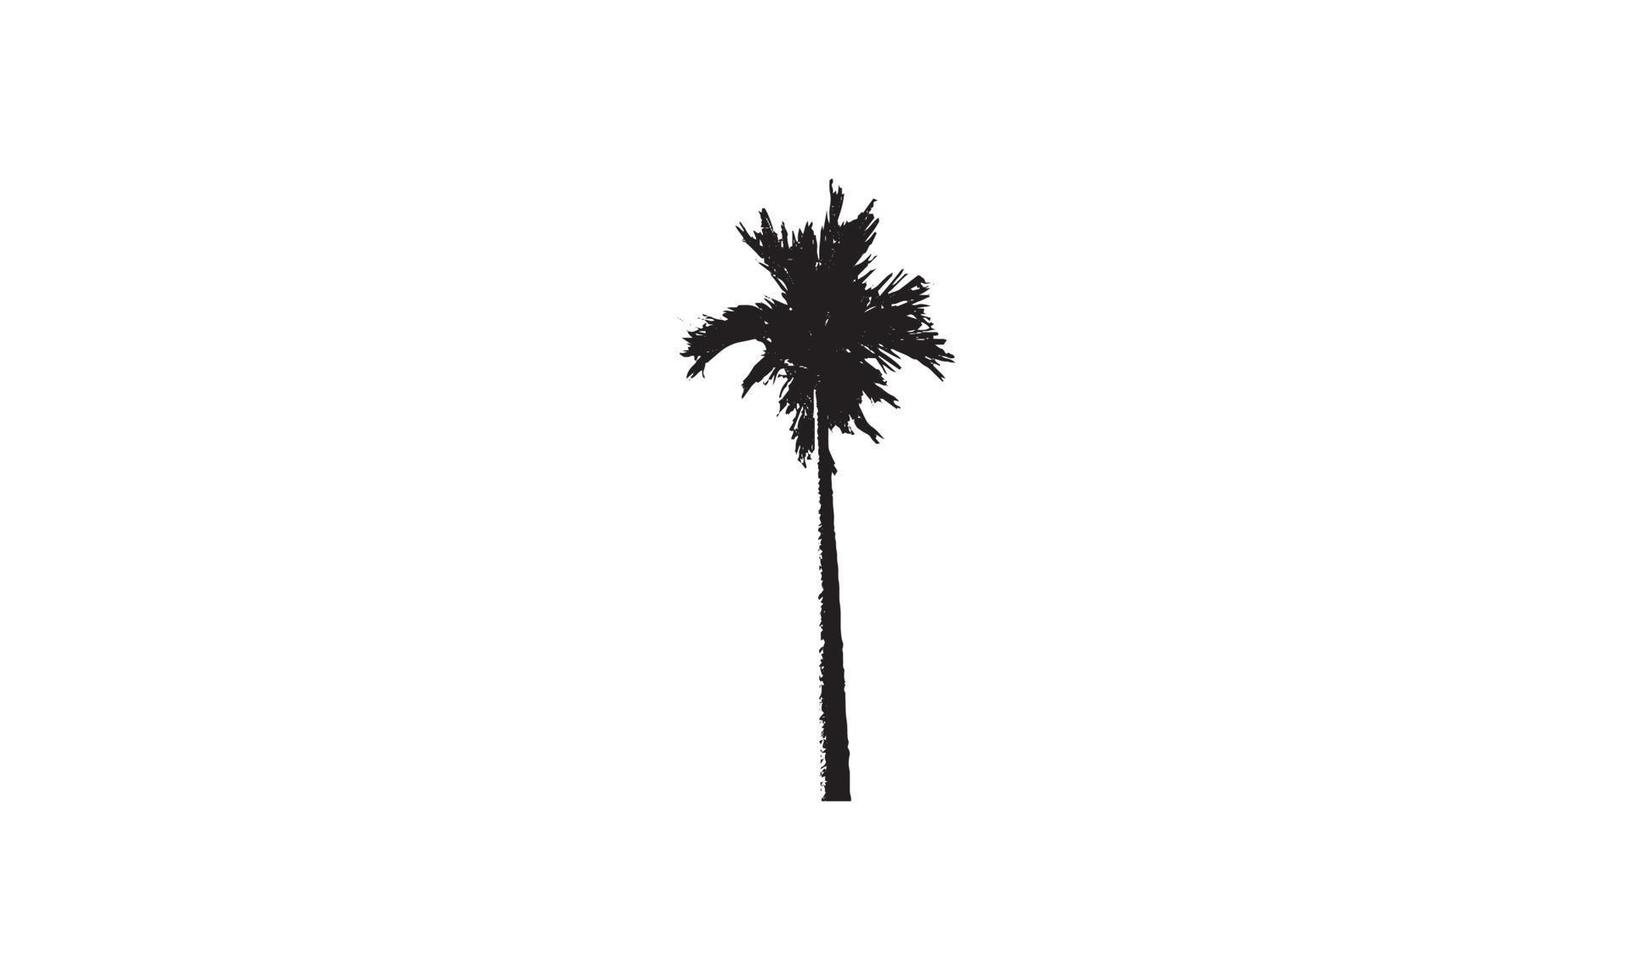 Logodesign der Palmenvektorillustration schwarz und weiß vektor